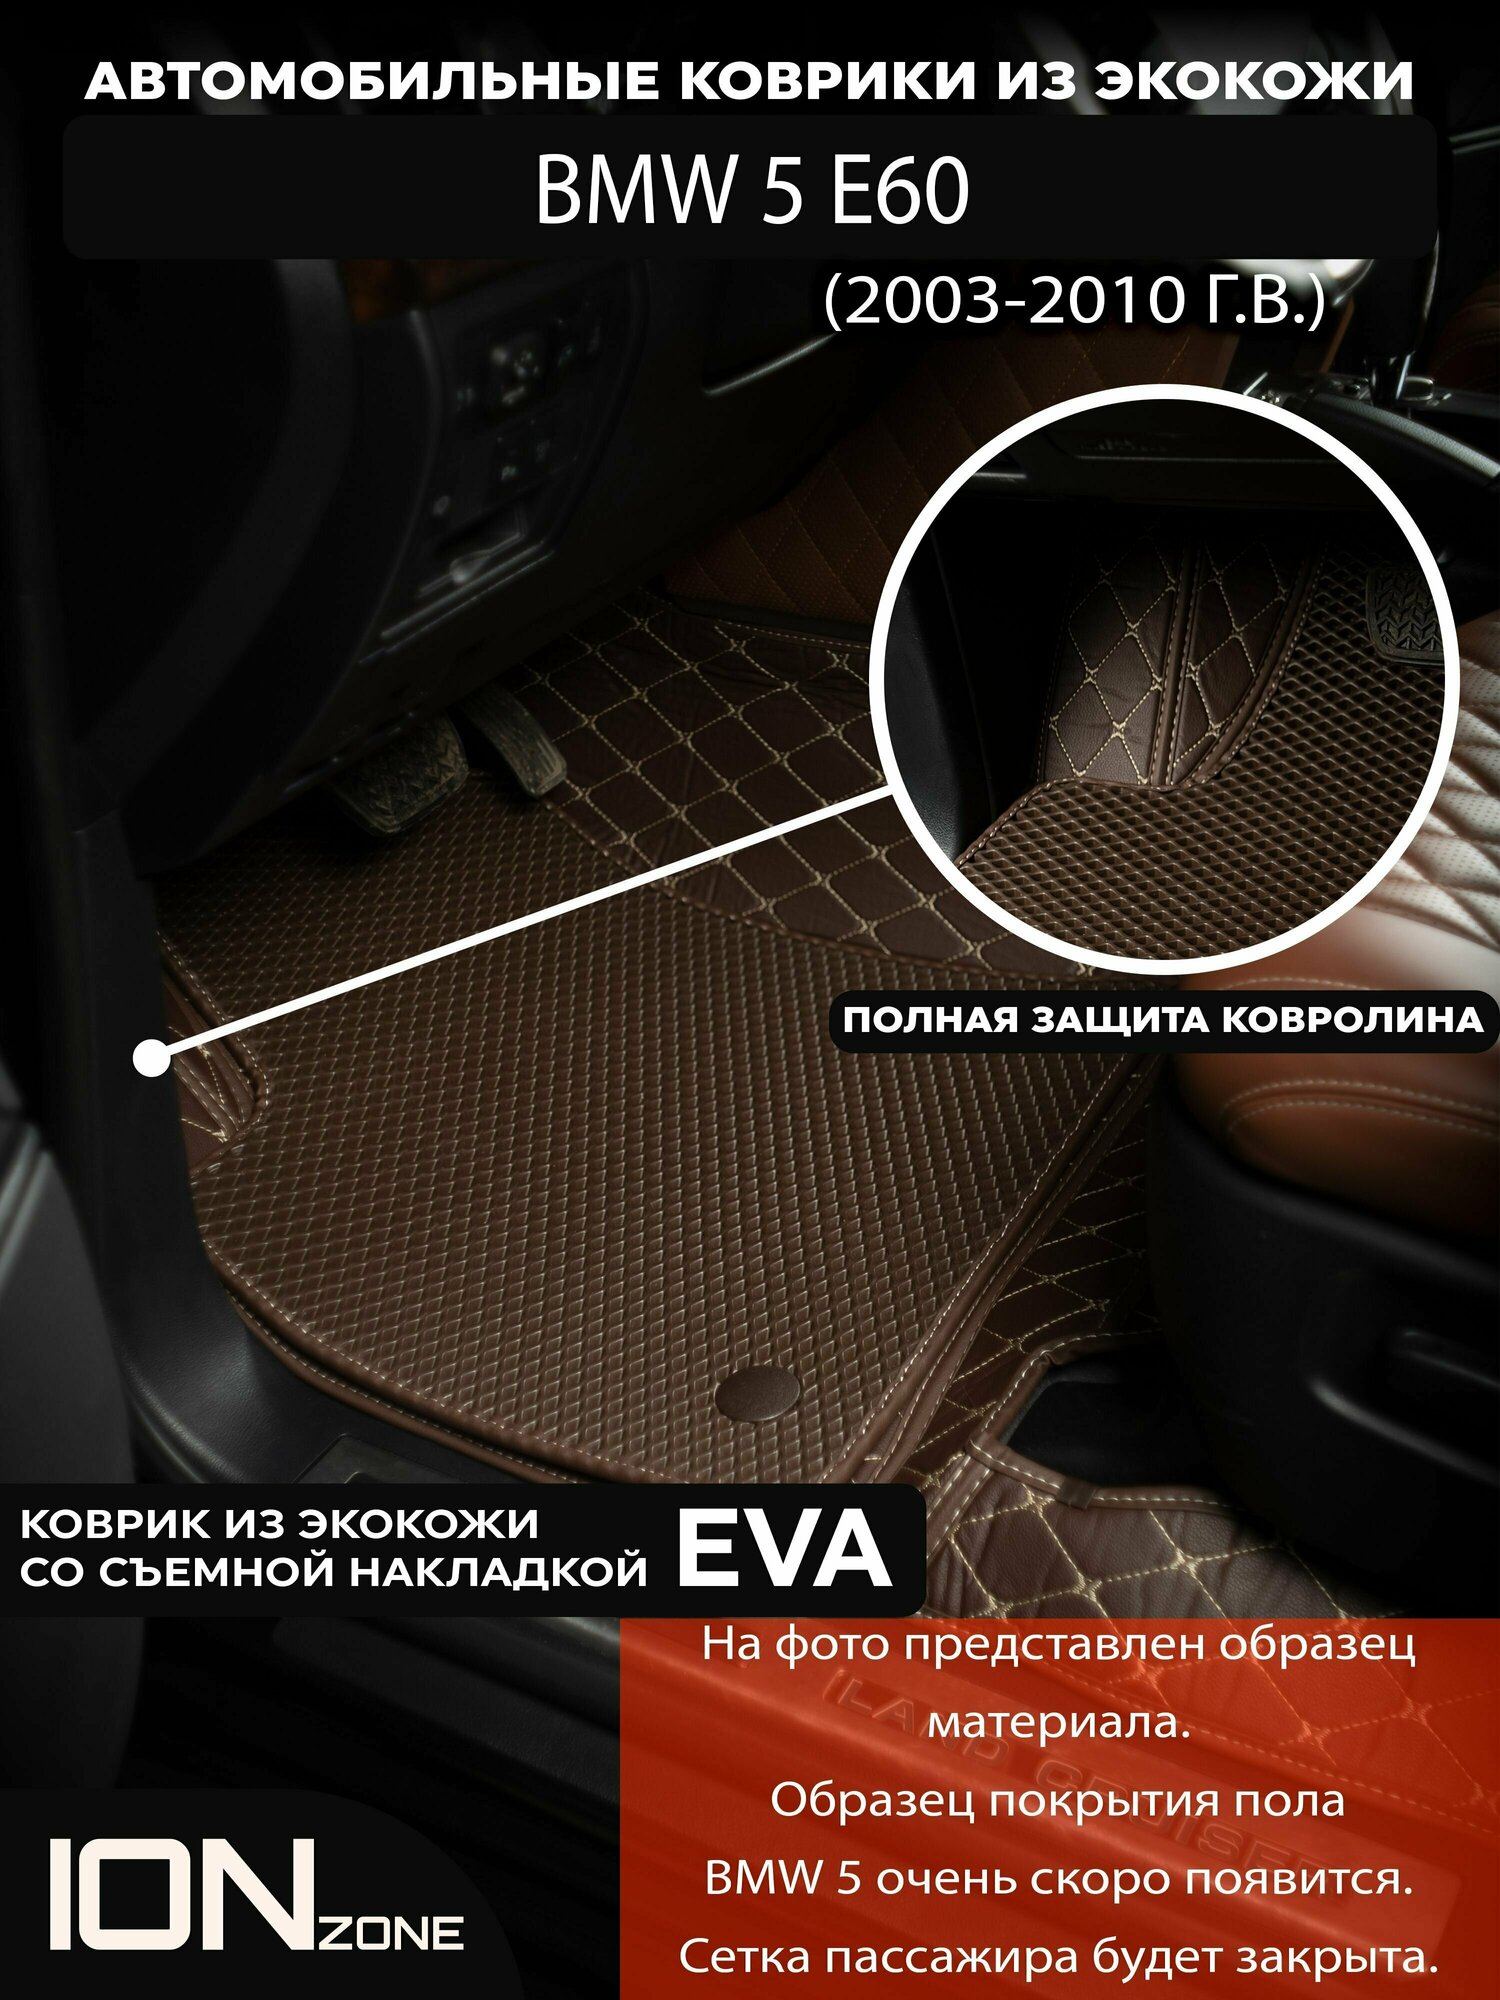 Автомобильные 3D коврики из экокожи на BMW 5 (2003-2010)